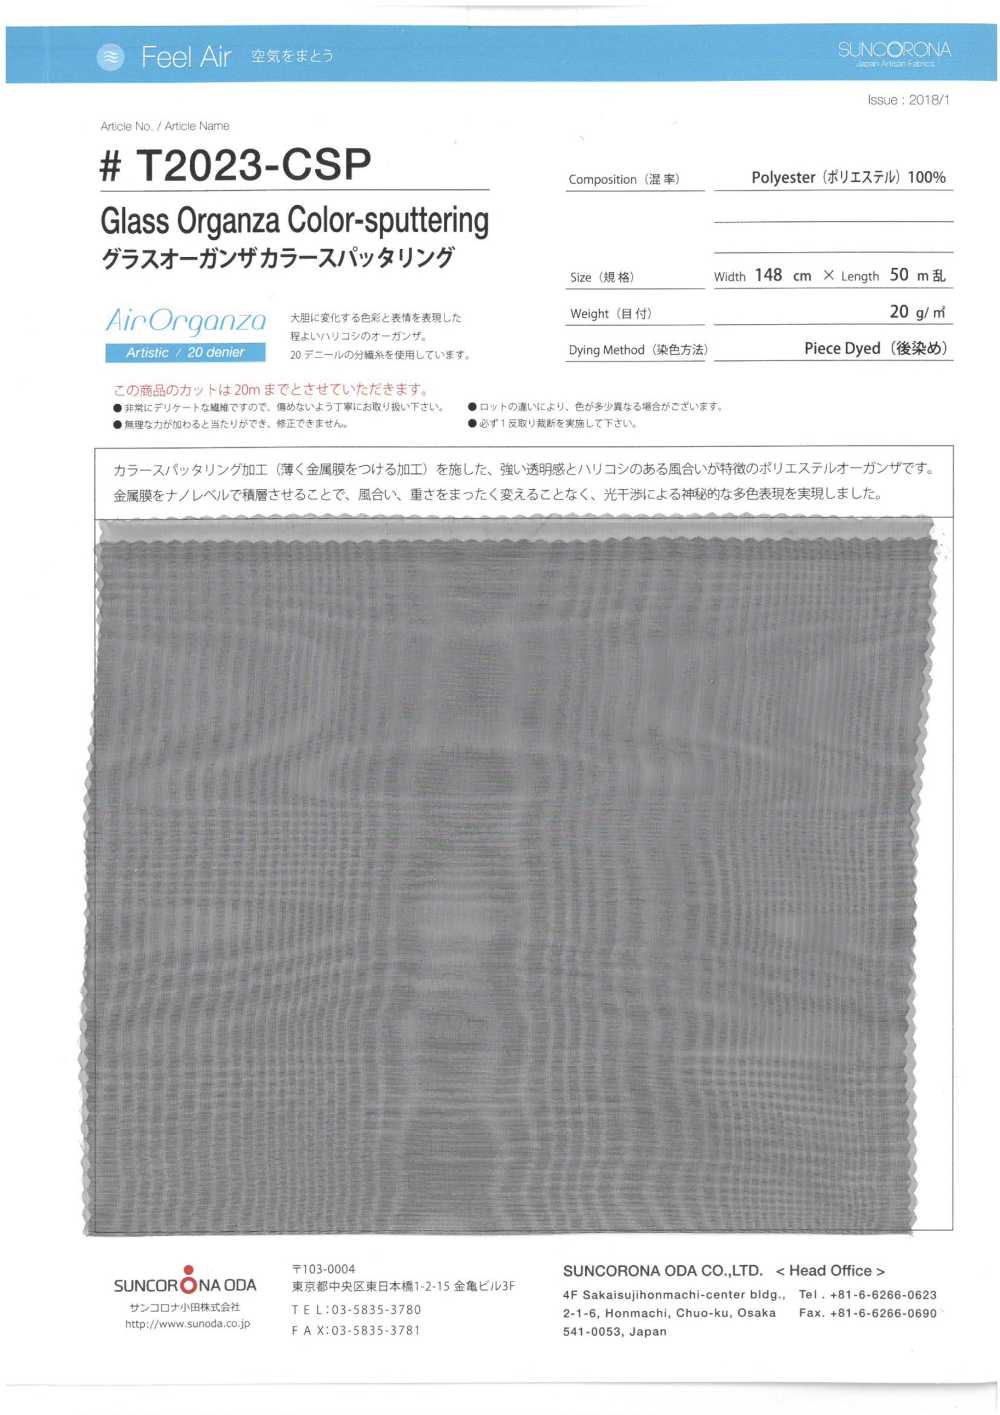 T2023-CSP Glass Organza Color Sputtering[Textile / Fabric] Suncorona Oda